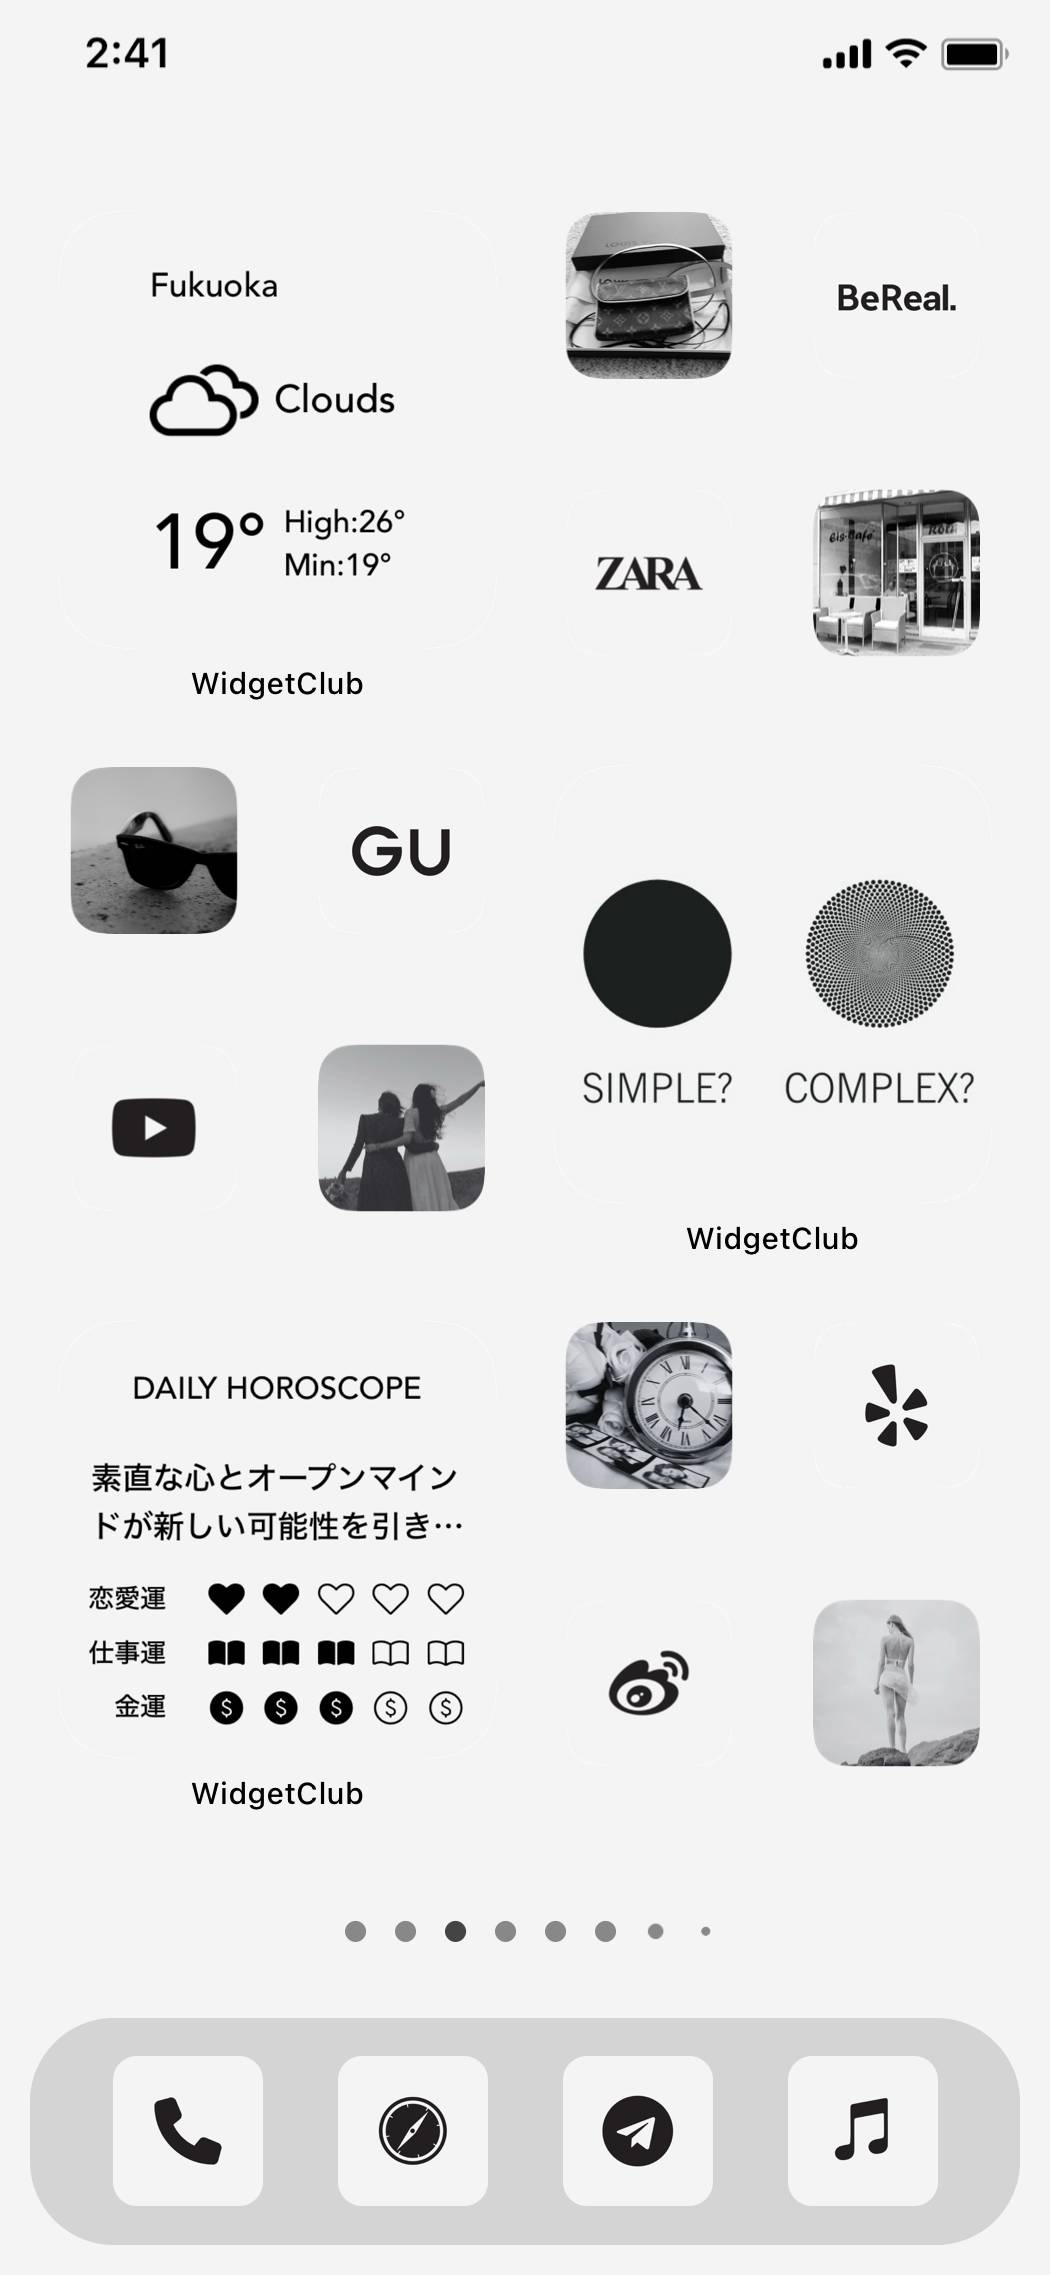 black × beige simple themeAna Ekran fikirleri[KAOndH7eoh7pJ3pHLFaA]